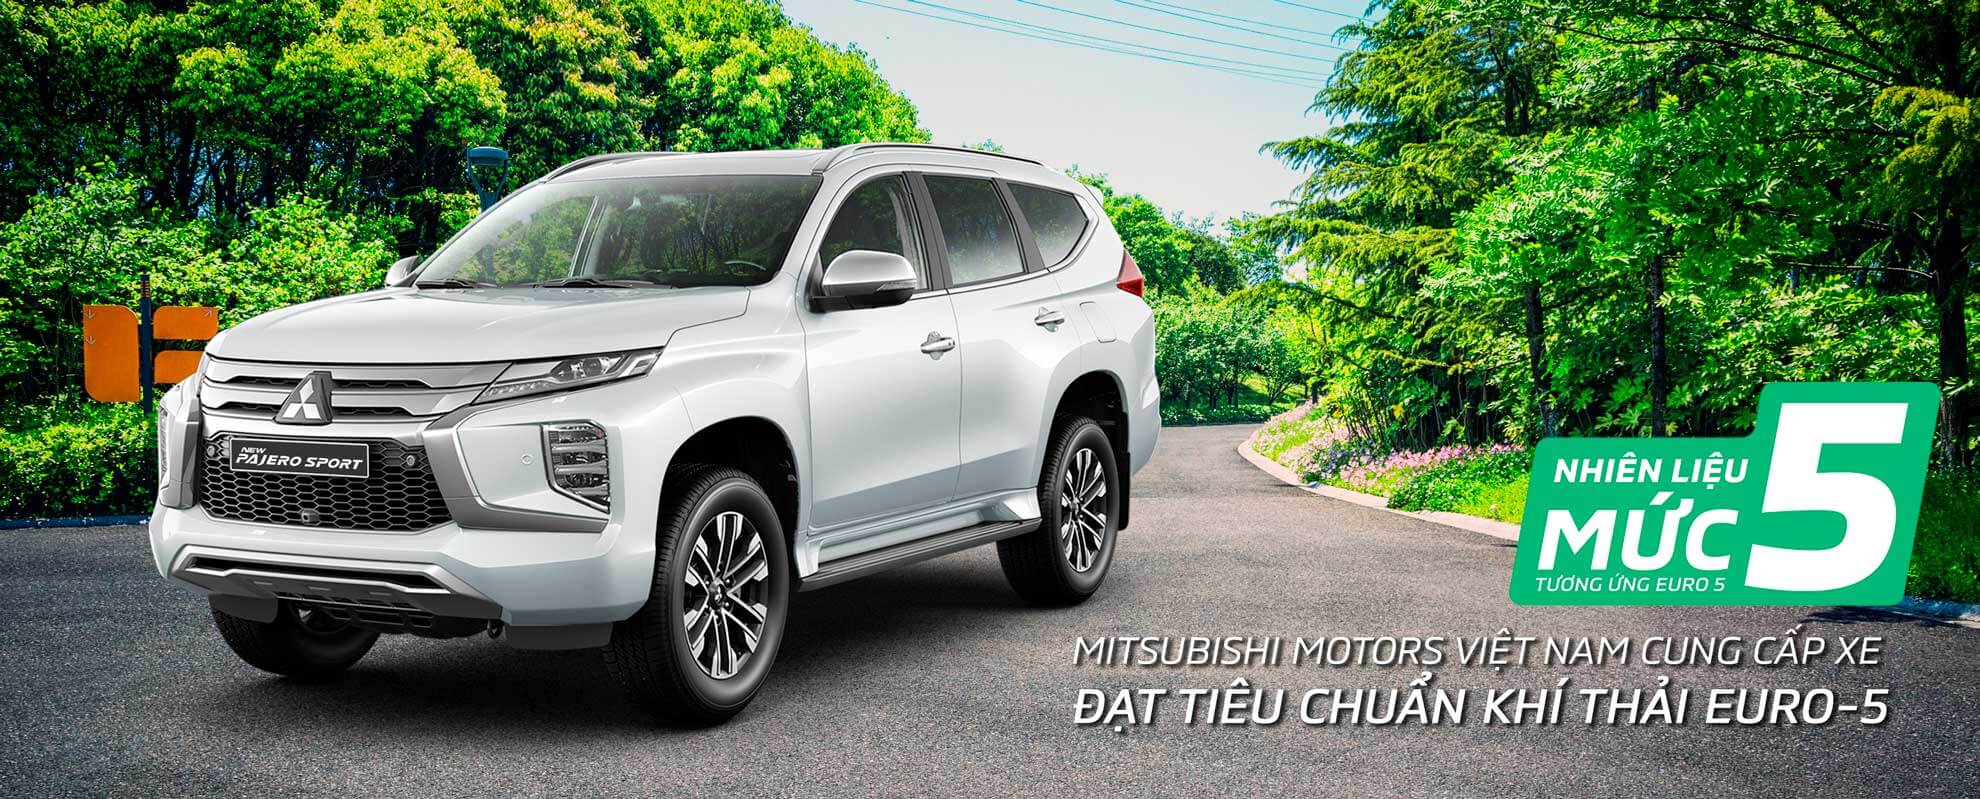 Mitsubishi Motors Việt Nam cung cấp xe đạt tiêu chuẩn khí thải Euro-5